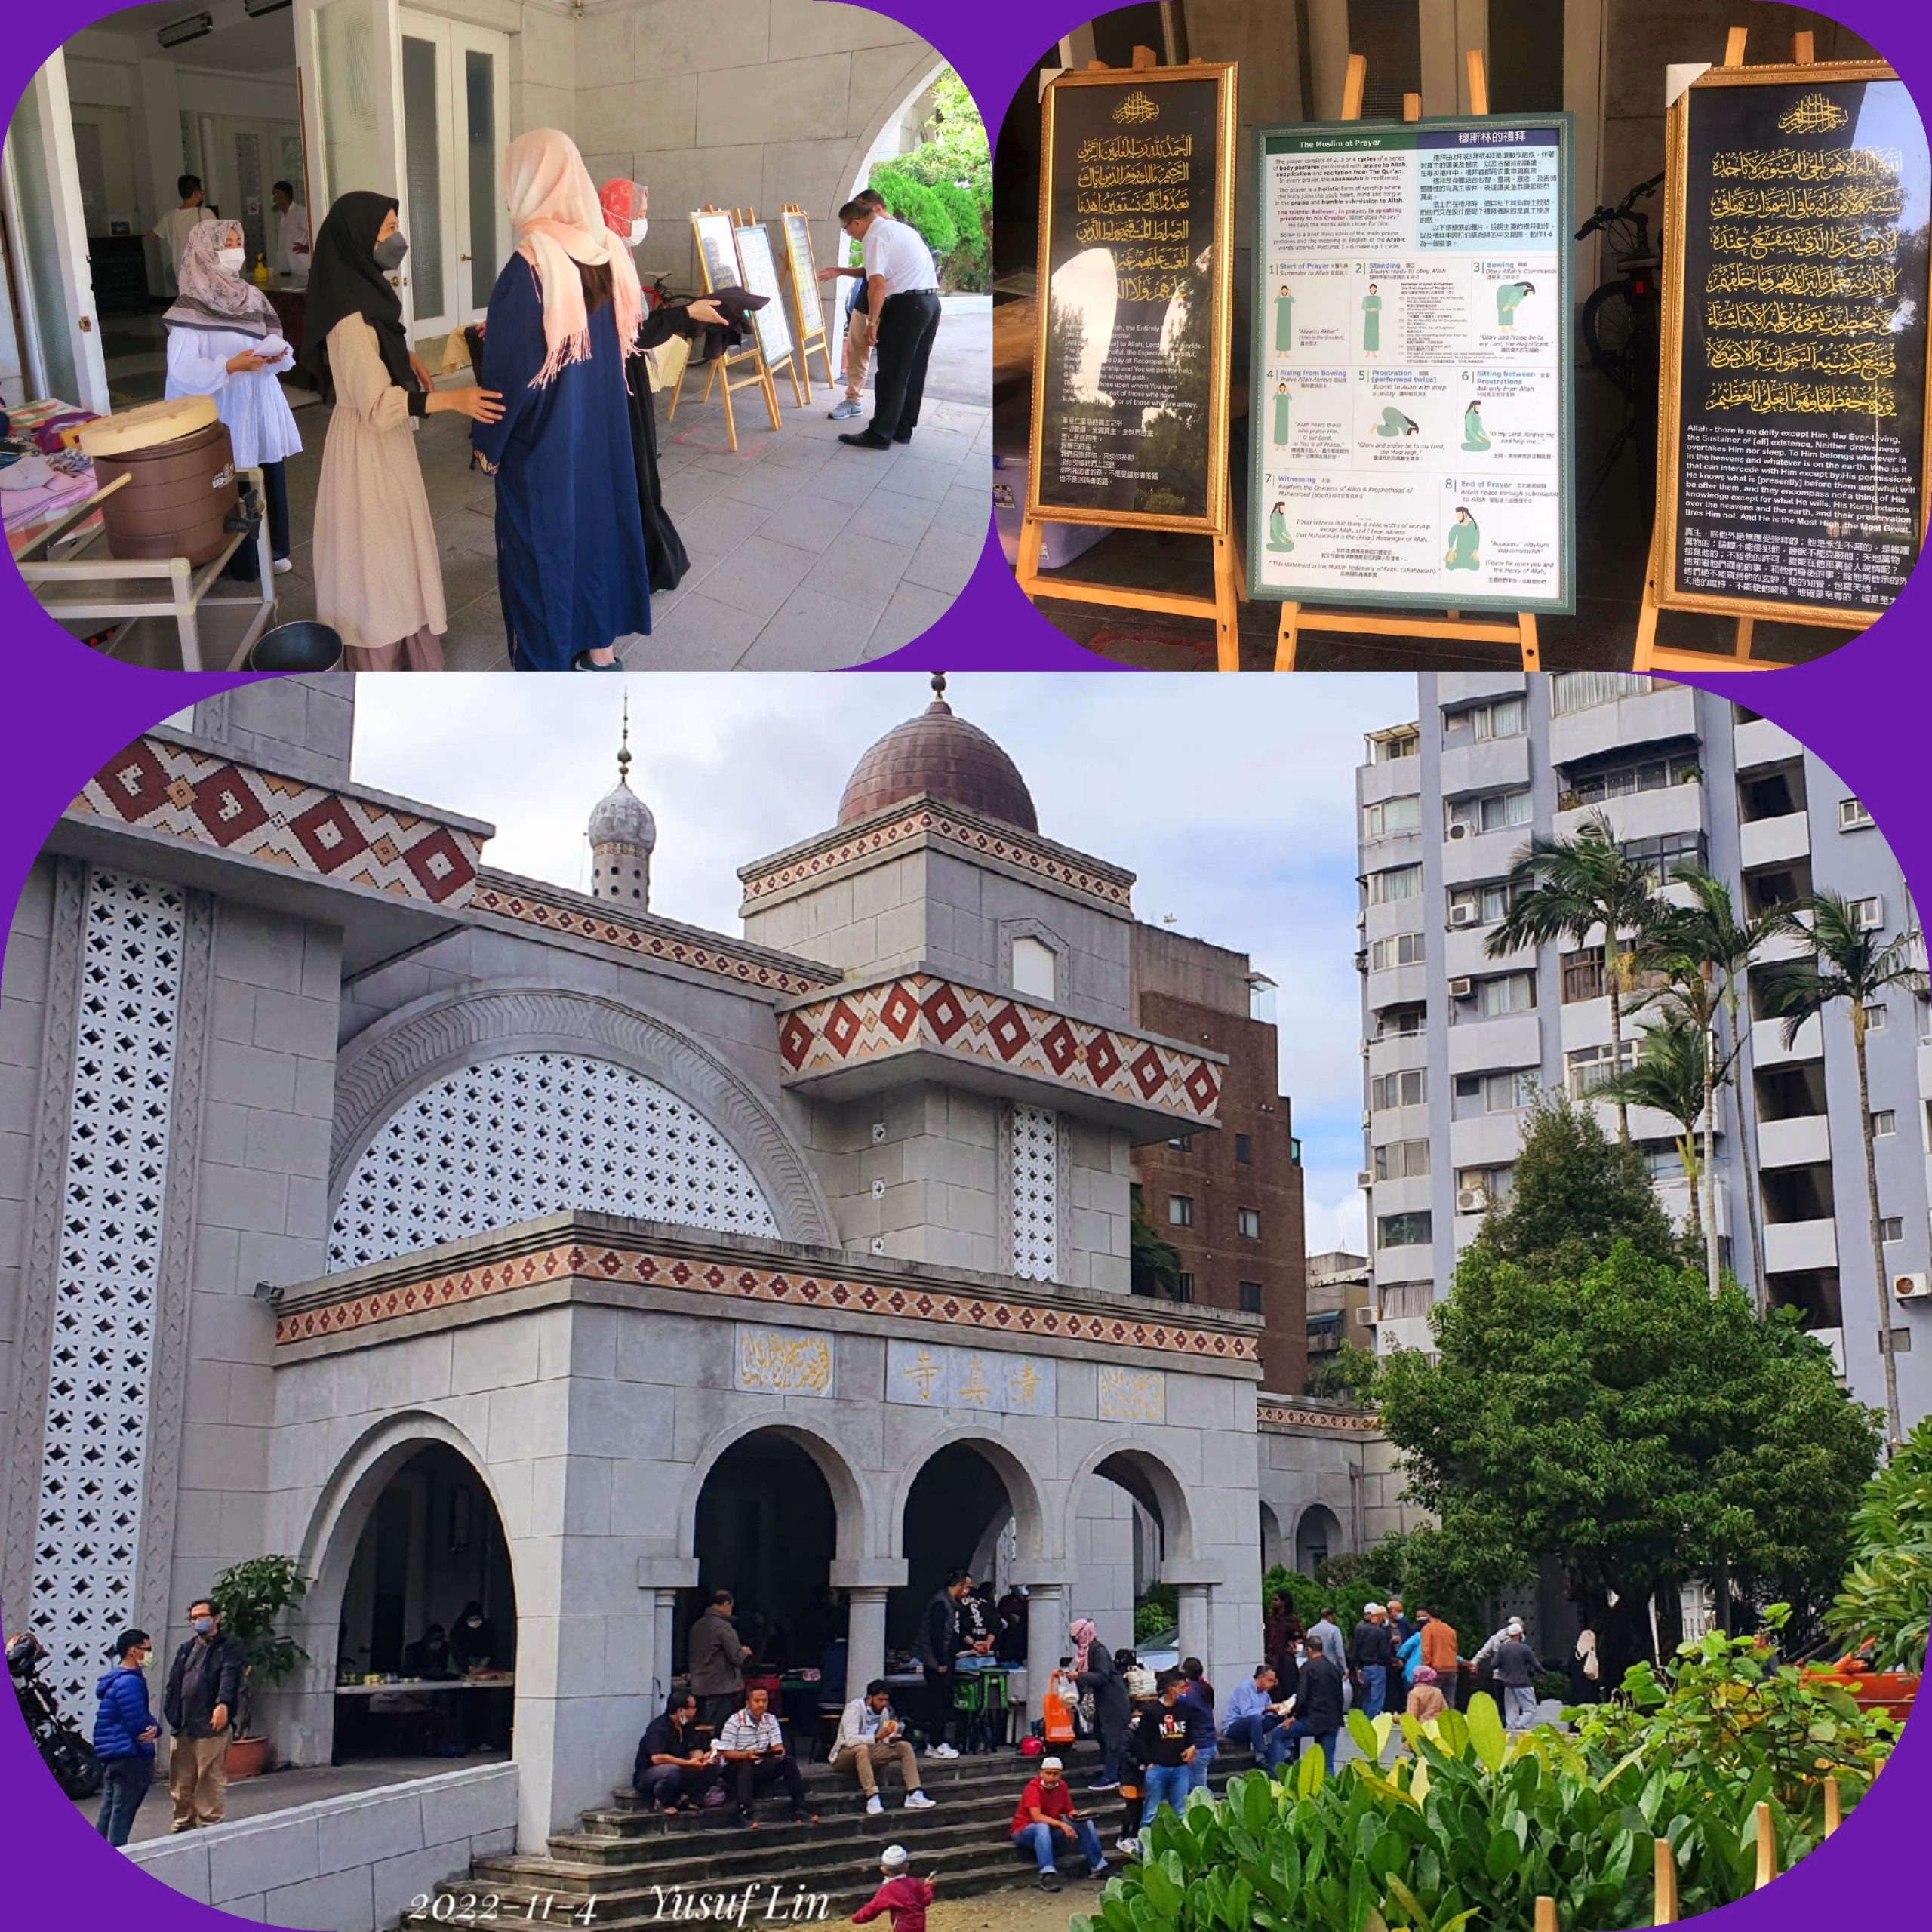 يتزايد إقبال التايوانيين على زيارة مسجد تايبيه الكبير في العاصمة التايوانية يوم الأحد